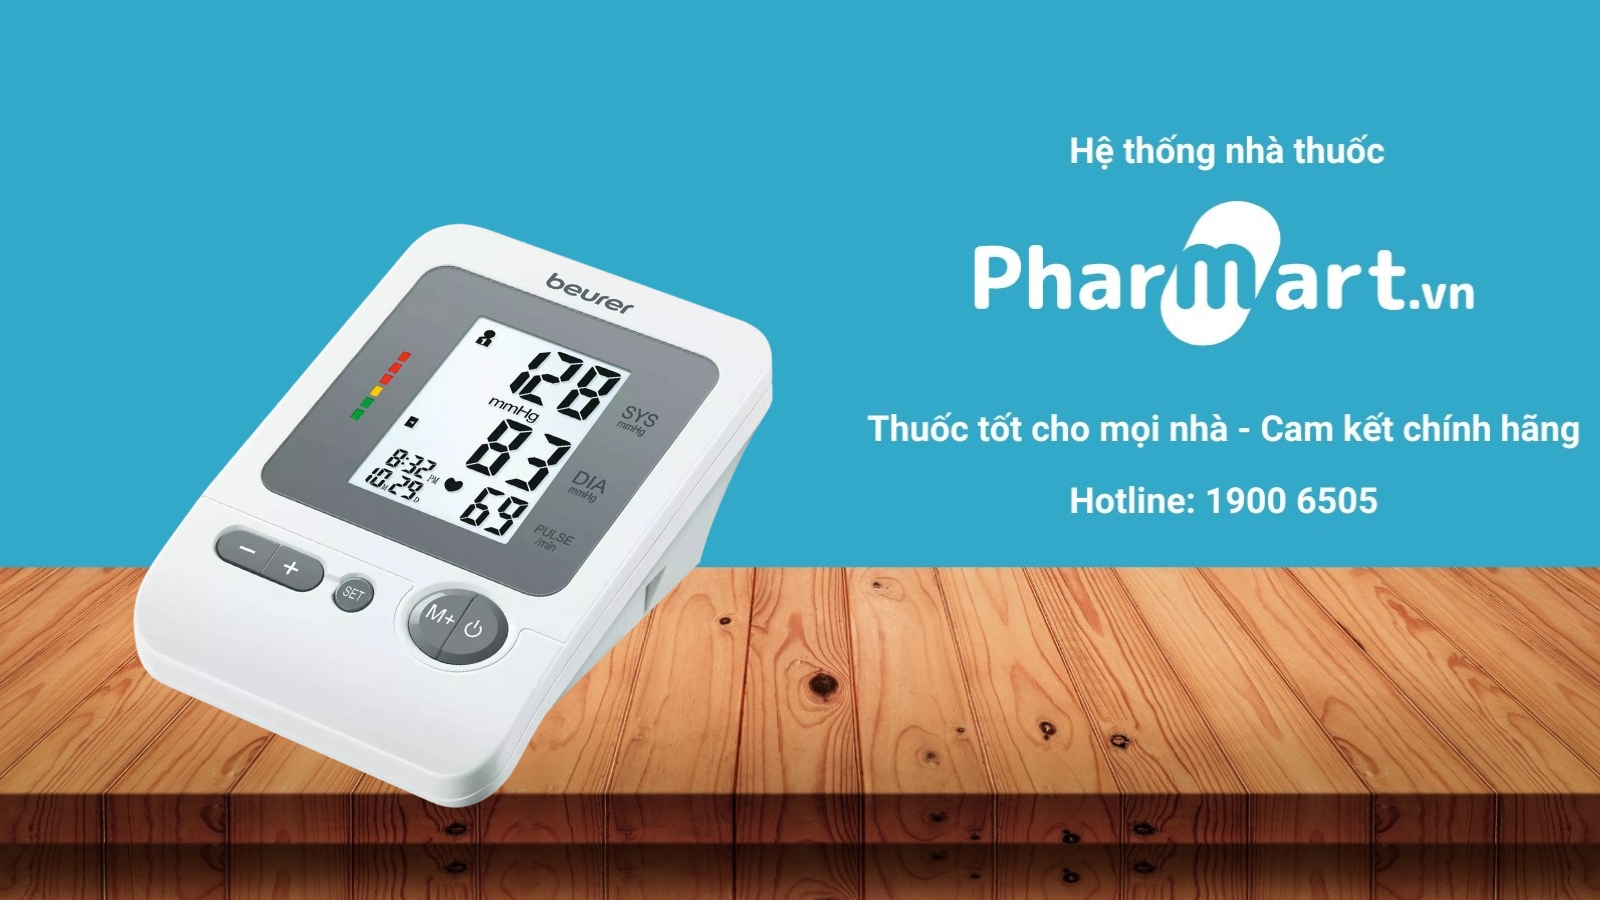 Mua máy đo huyết áp Beurer BM26 chính hãng tại Pharmart.vn